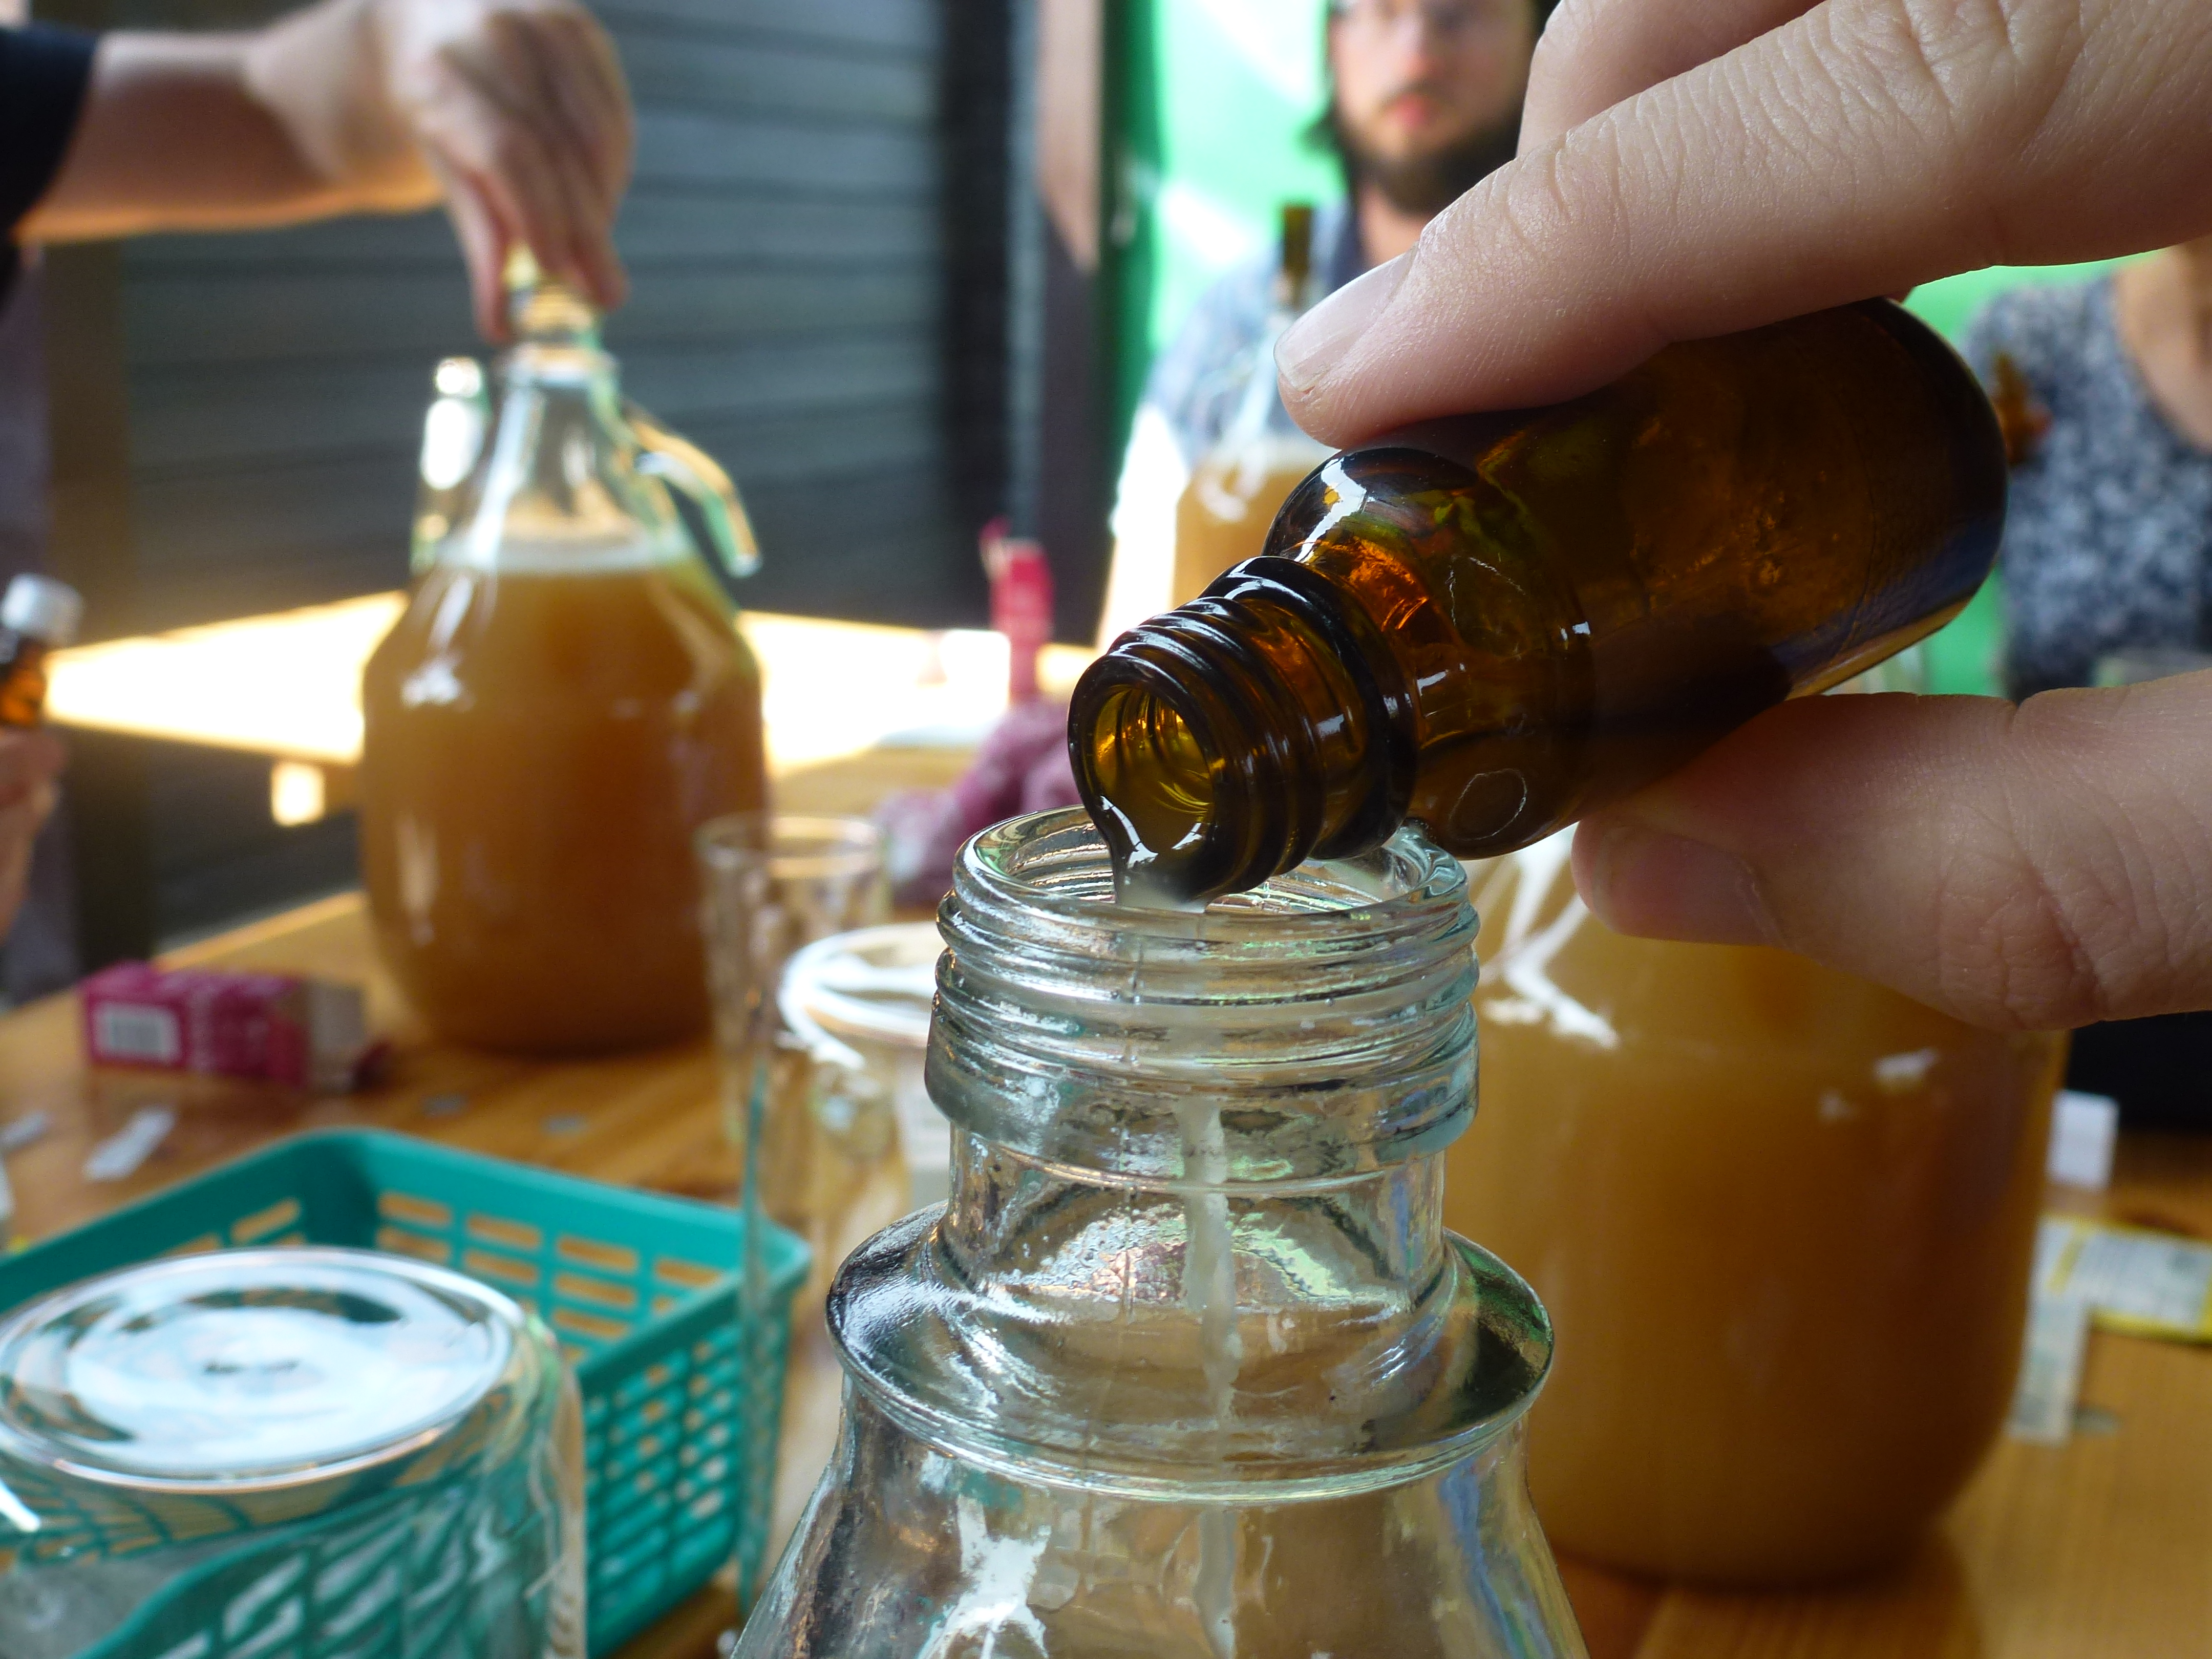 Birnen-Cider selber herstellen